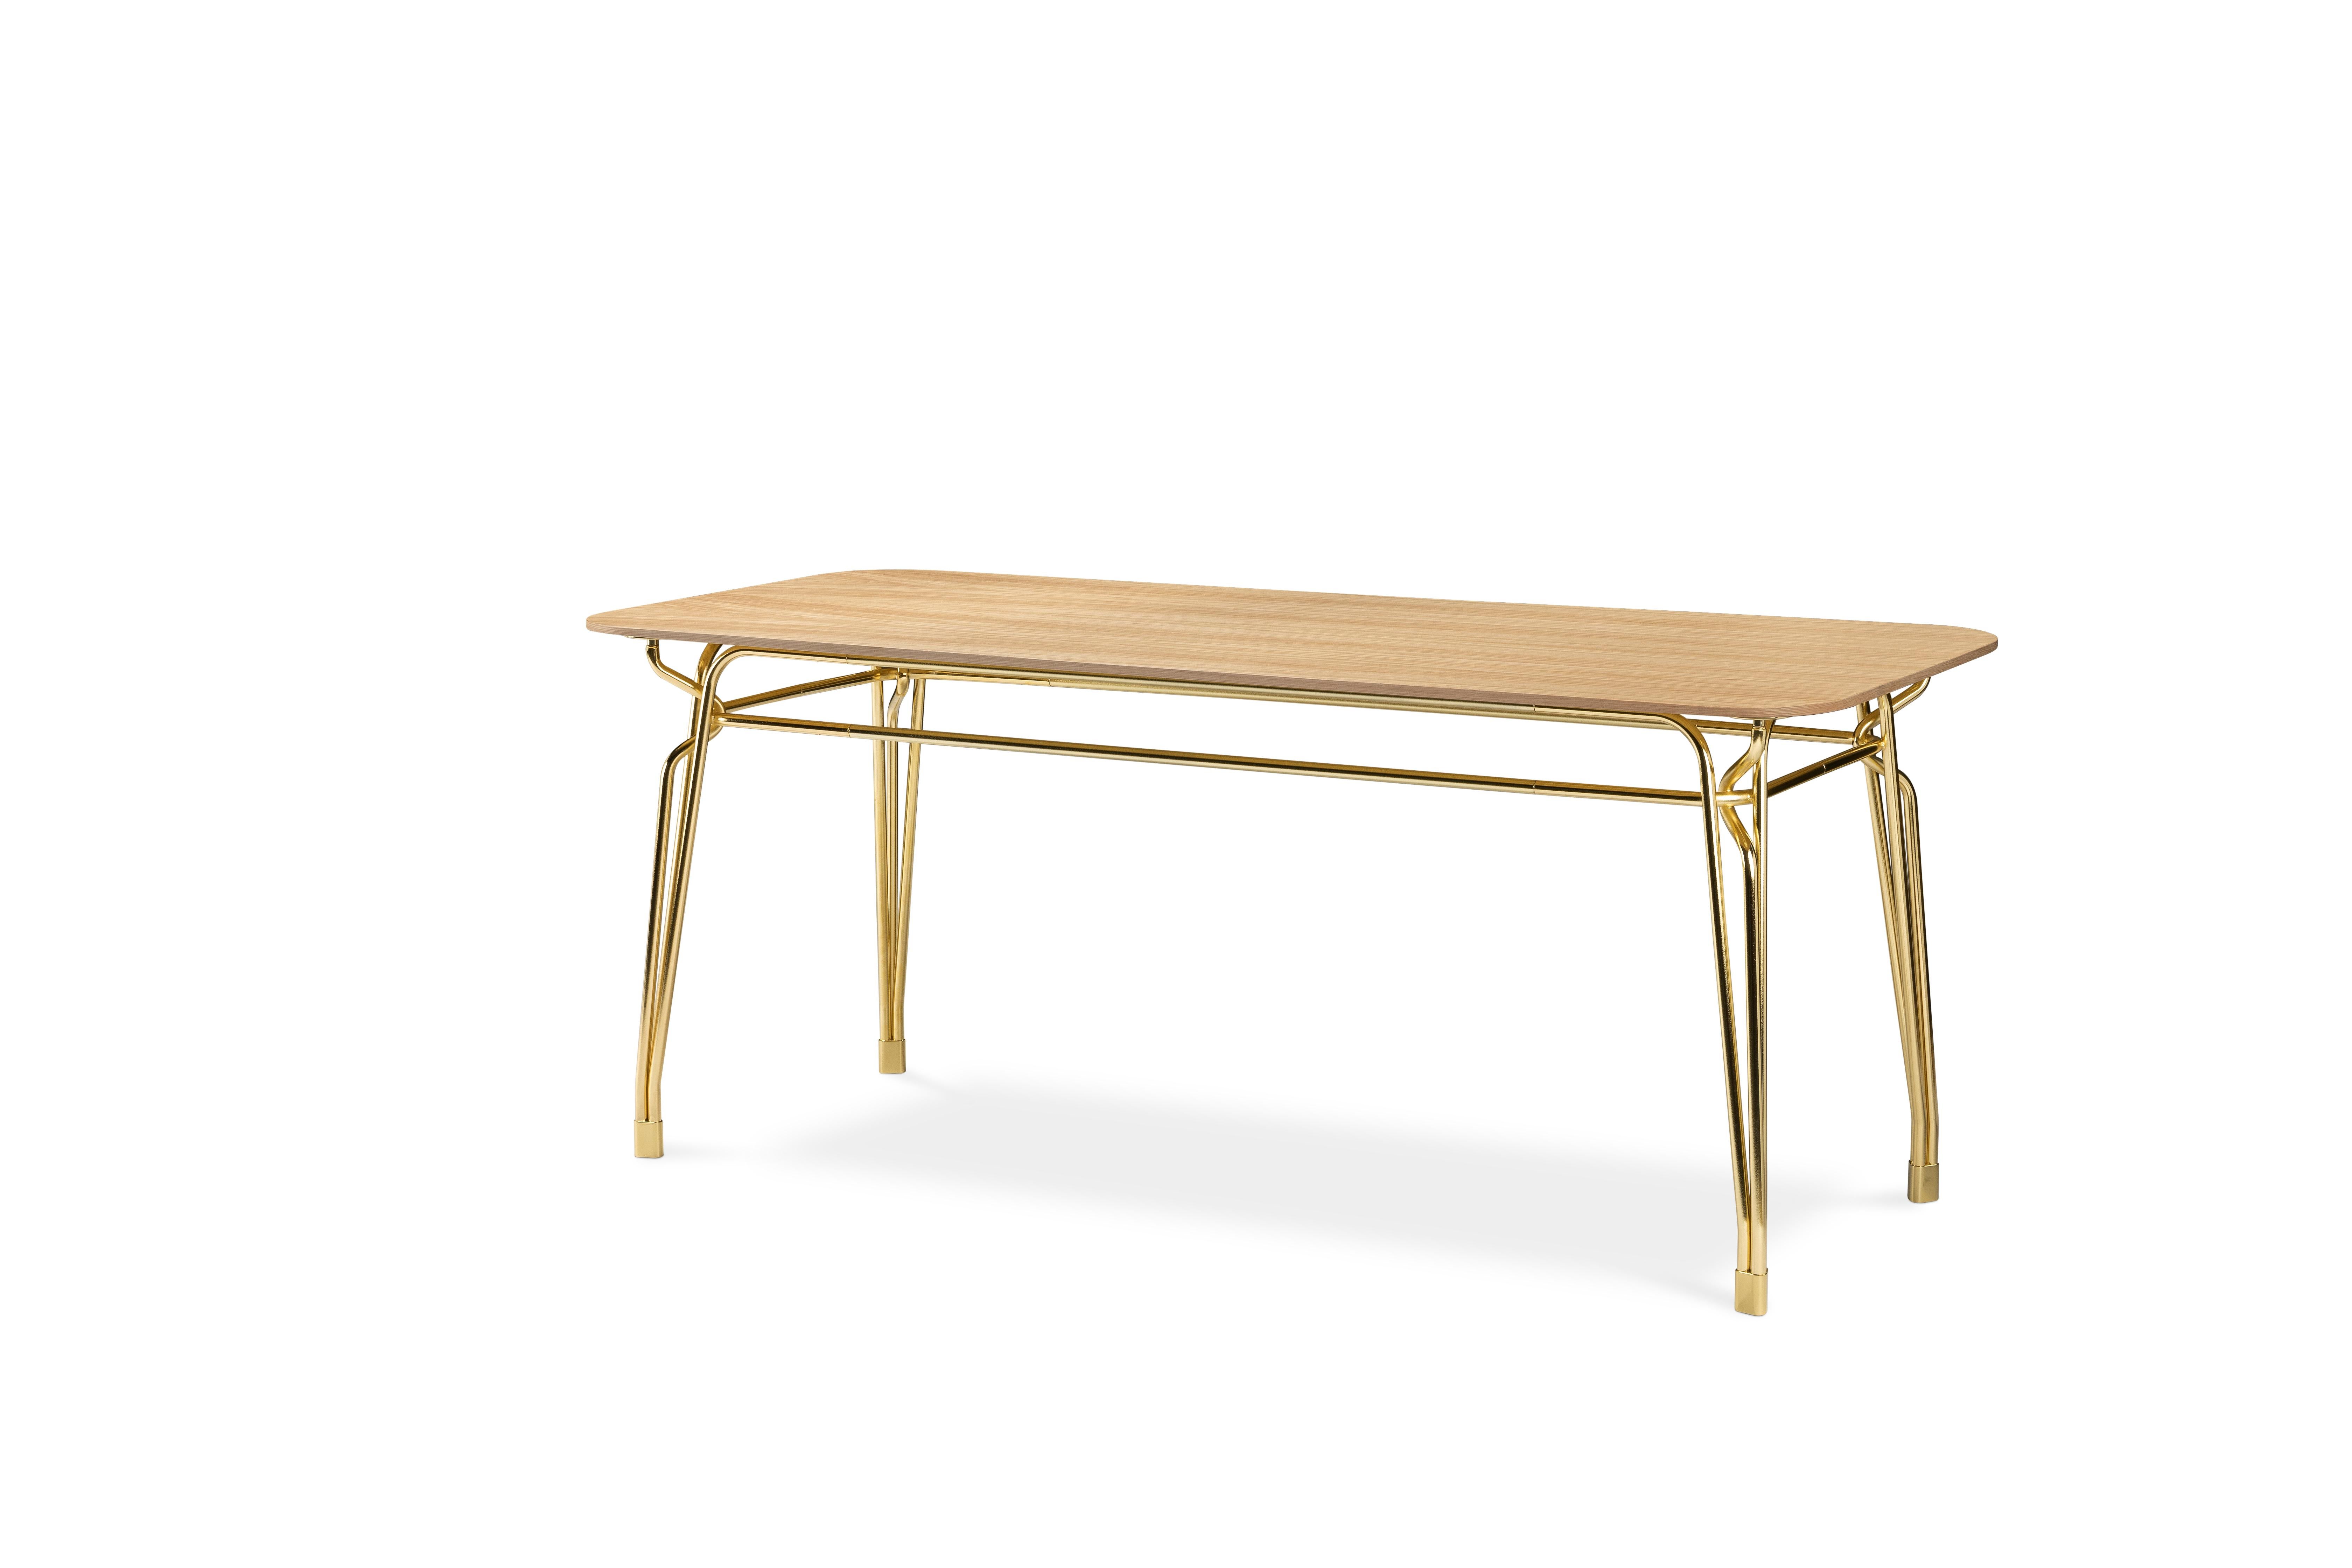 Famille de tables caractérisée par l'élégante structure métallique sophistiquée qui soutient le plateau en verre. L'inspiration des meubles d'extérieur du début du siècle rencontre l'artisanat moderne en métal de haute qualité. Le tissage complexe